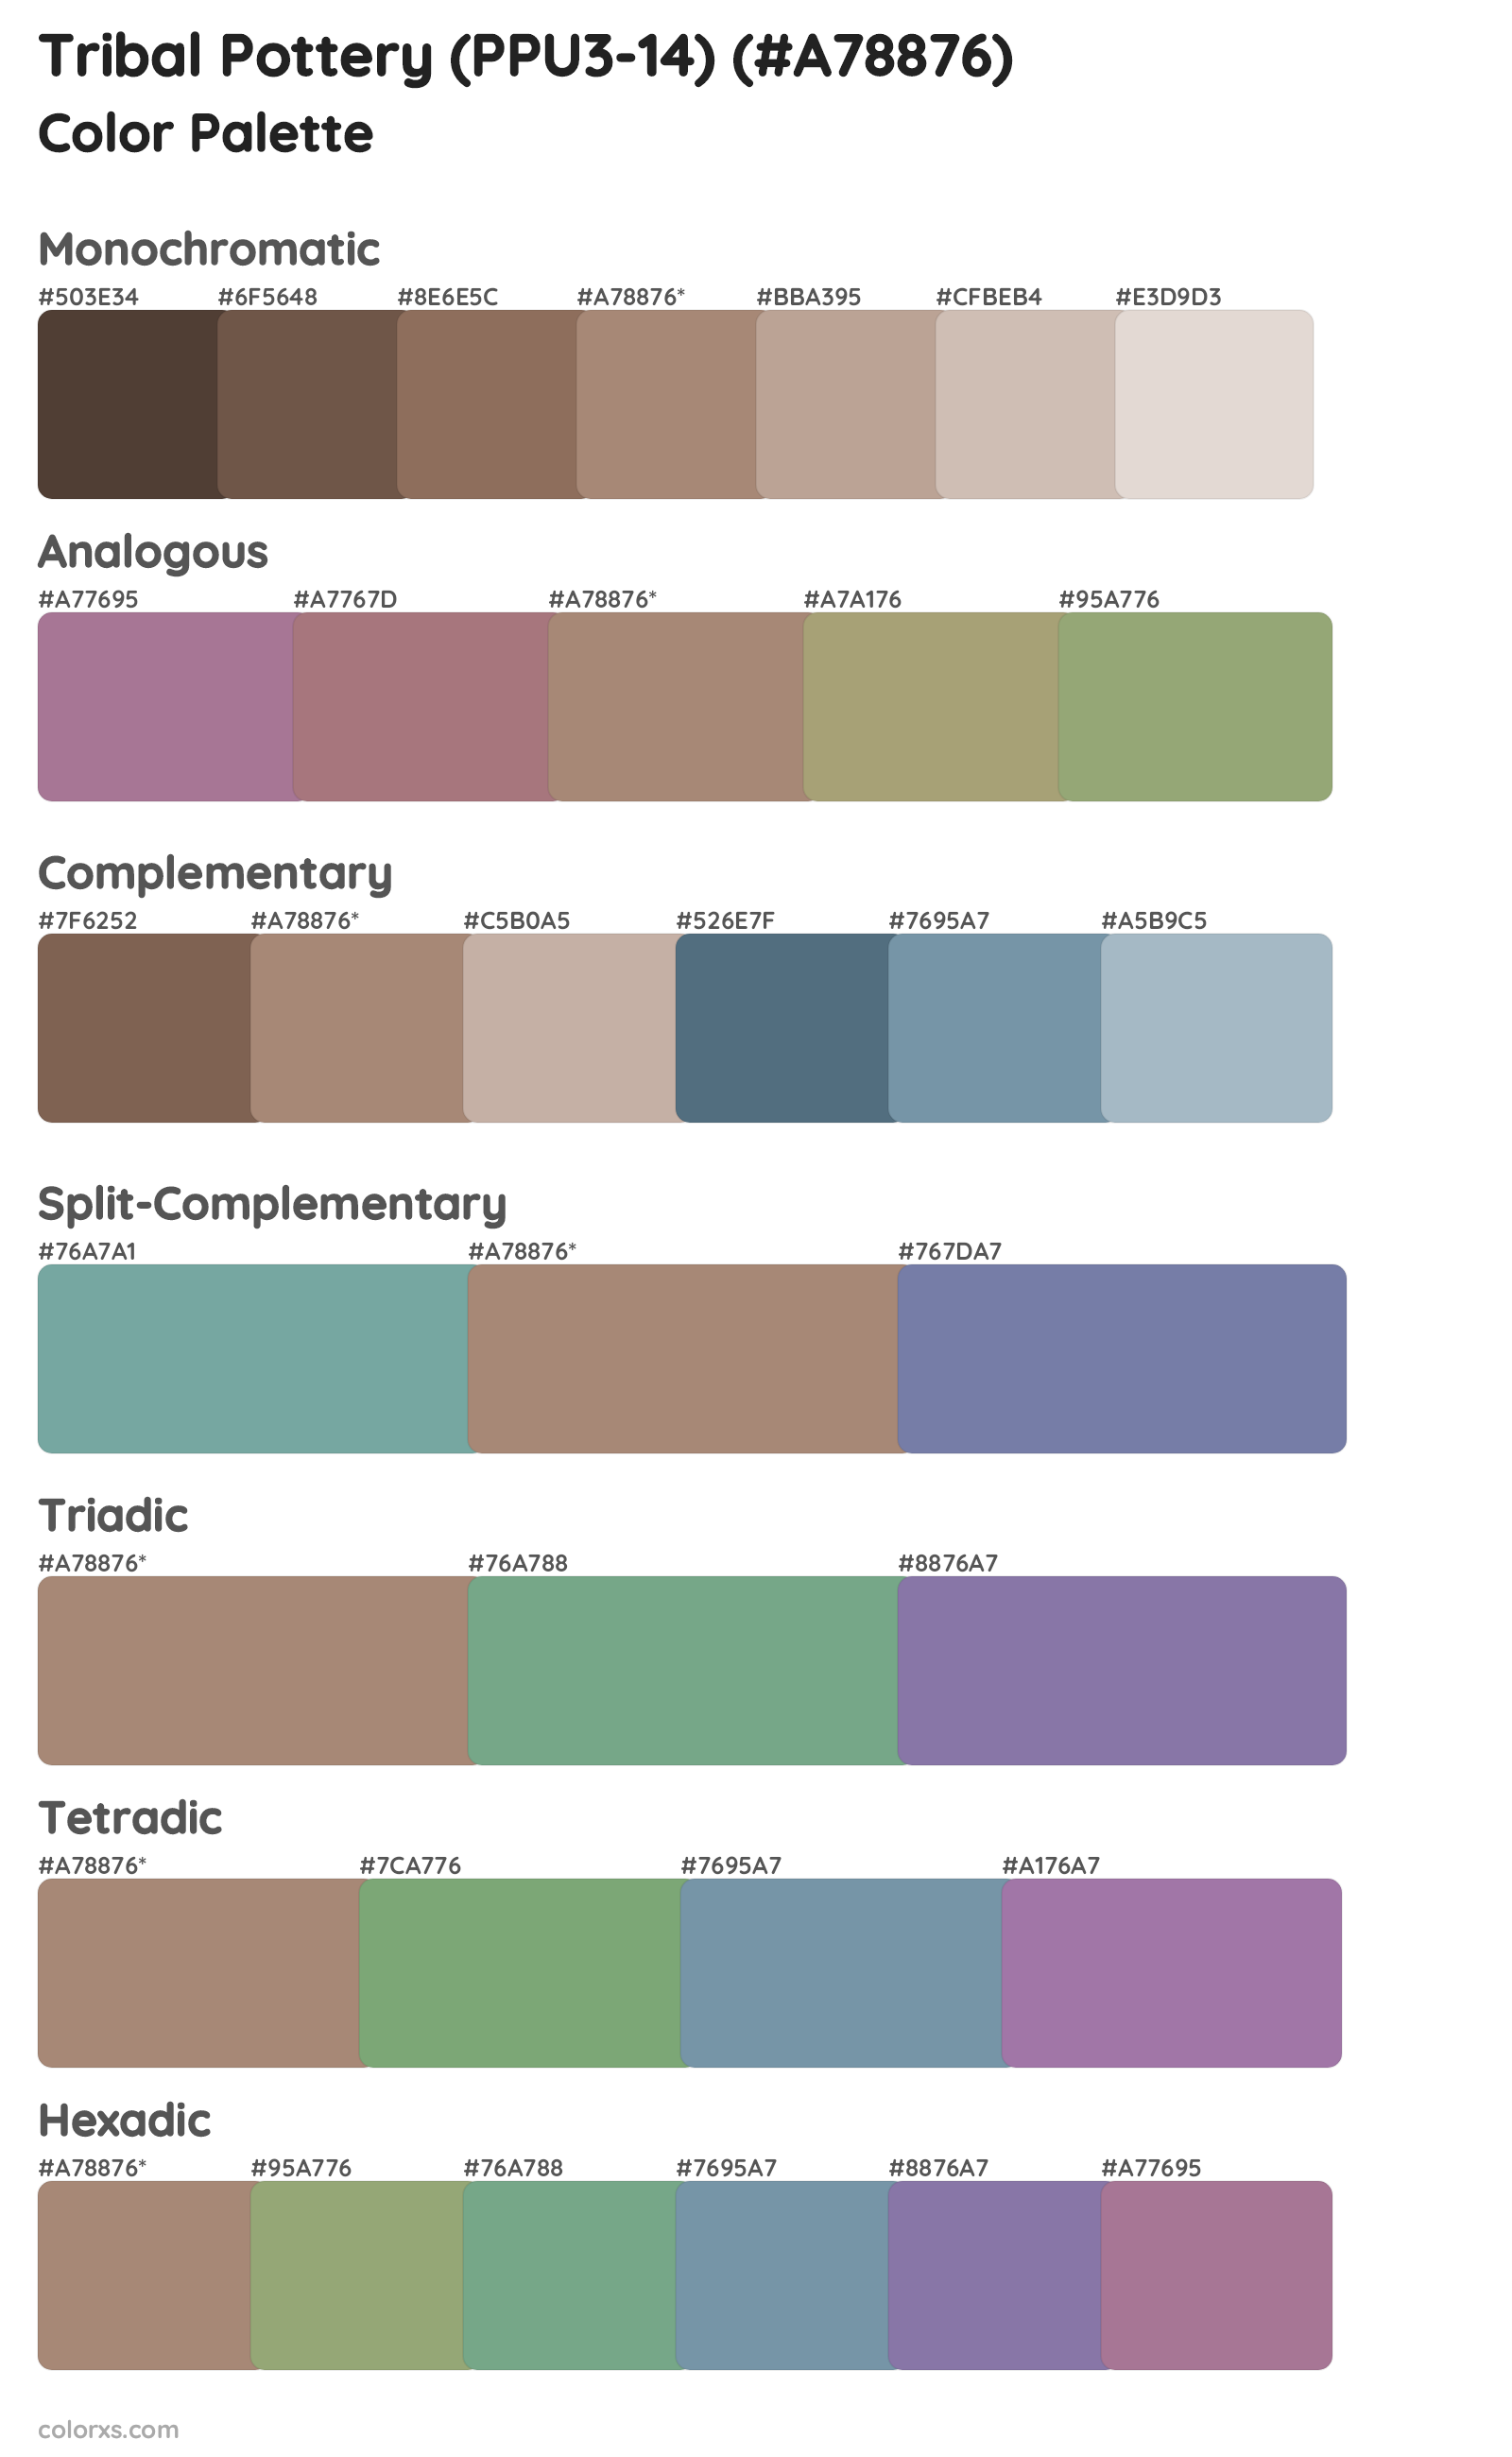 Tribal Pottery (PPU3-14) Color Scheme Palettes